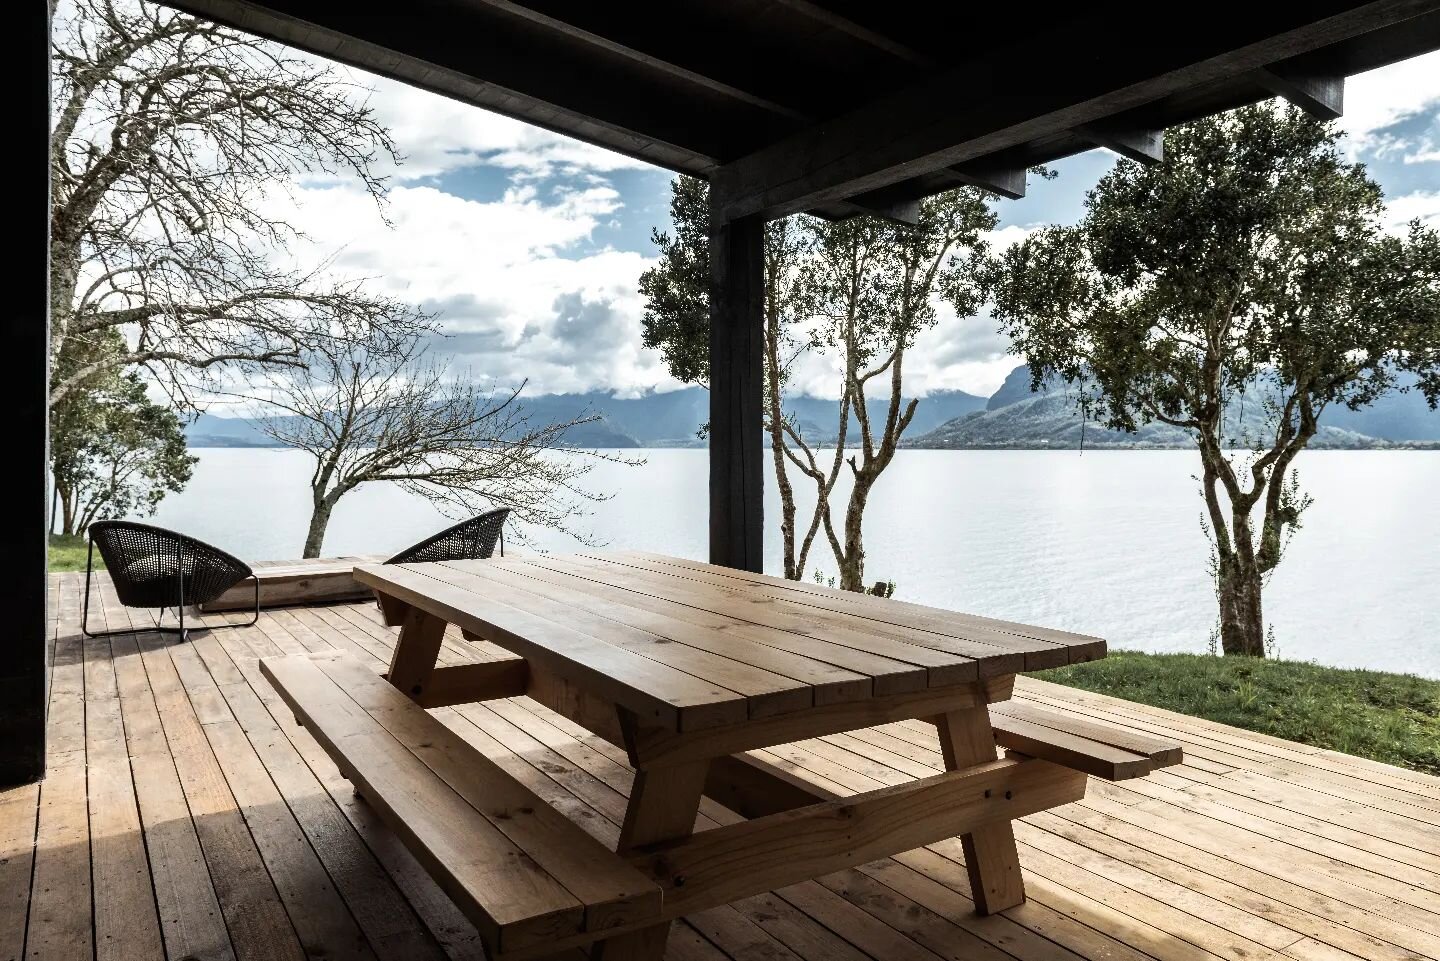 Casa en el lago
Espacio intermedio 
Exterior - Interior 
 
Construcci&oacute;n 2021
+ pmmk
Lago Ranco
Chile